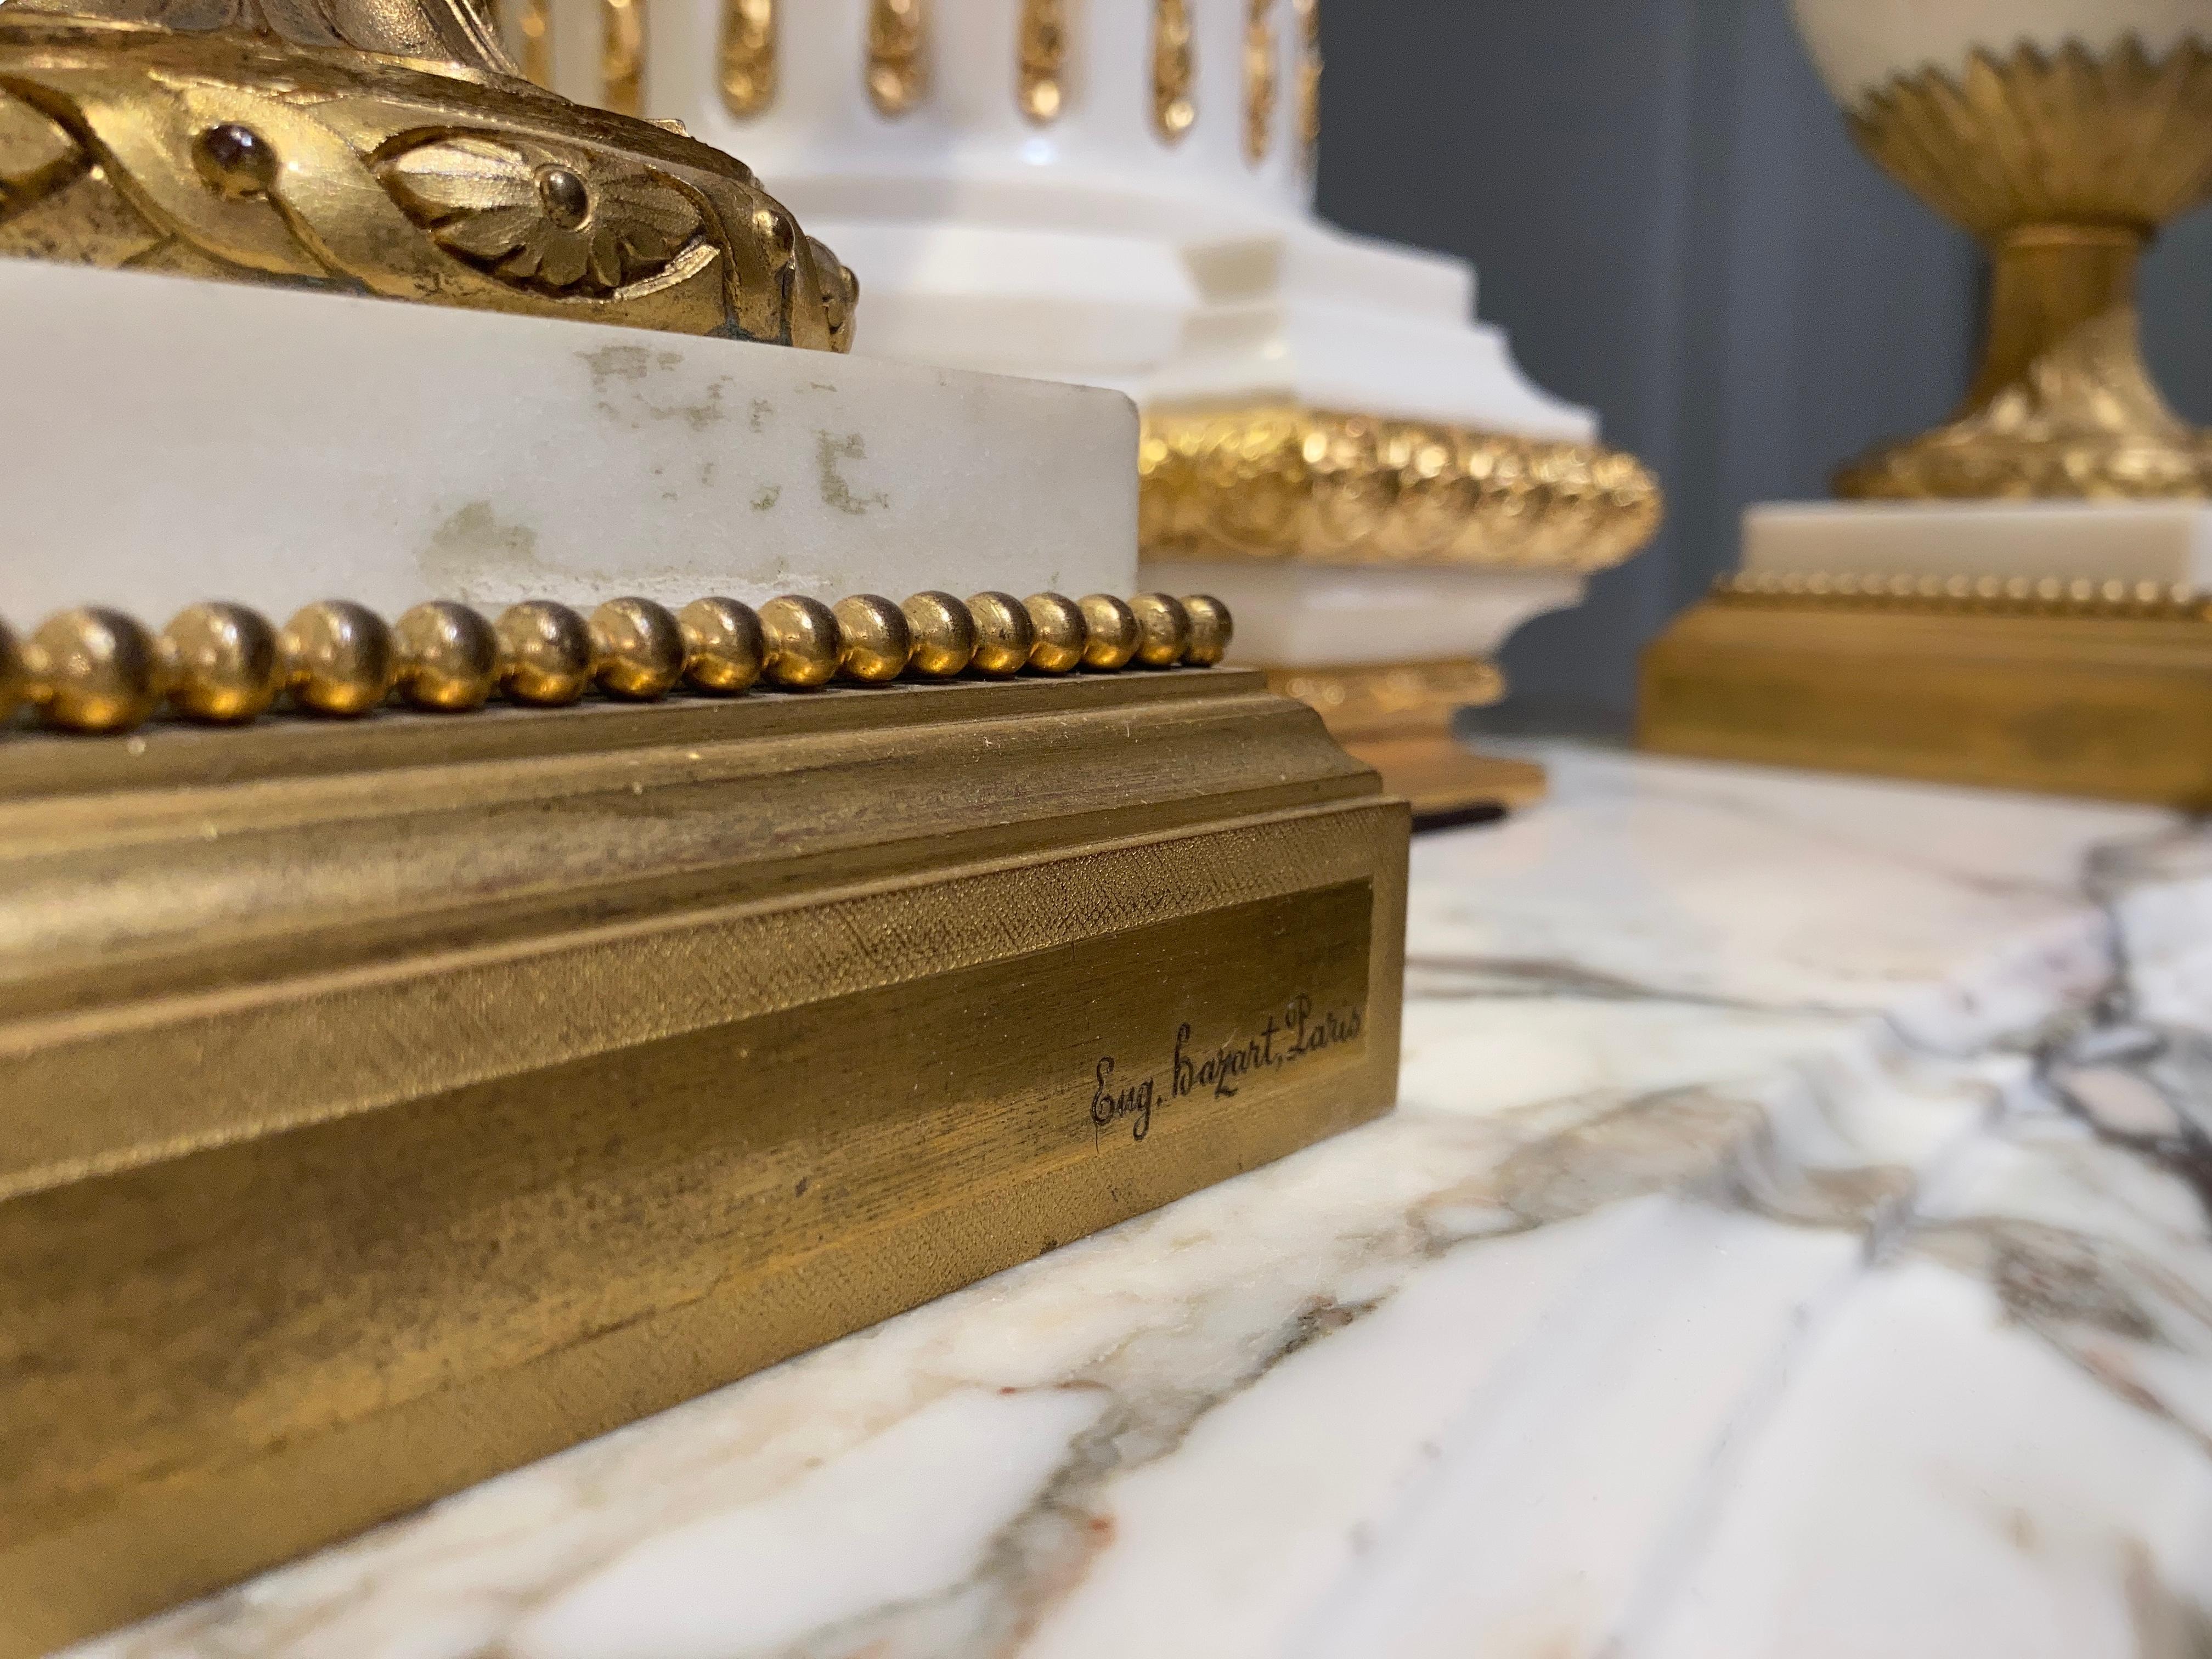 Ein schönes Paar Urnen im Louis XVI-Stil, signiert von Eugene Bazart aus Paris.

Aus Carrara-Marmor und fein gegossener, gehobelter und vergoldeter Bronze; der taillierte, girlandenförmig drapierte Korpus mit Henkeln und Eichelknäufen steht auf